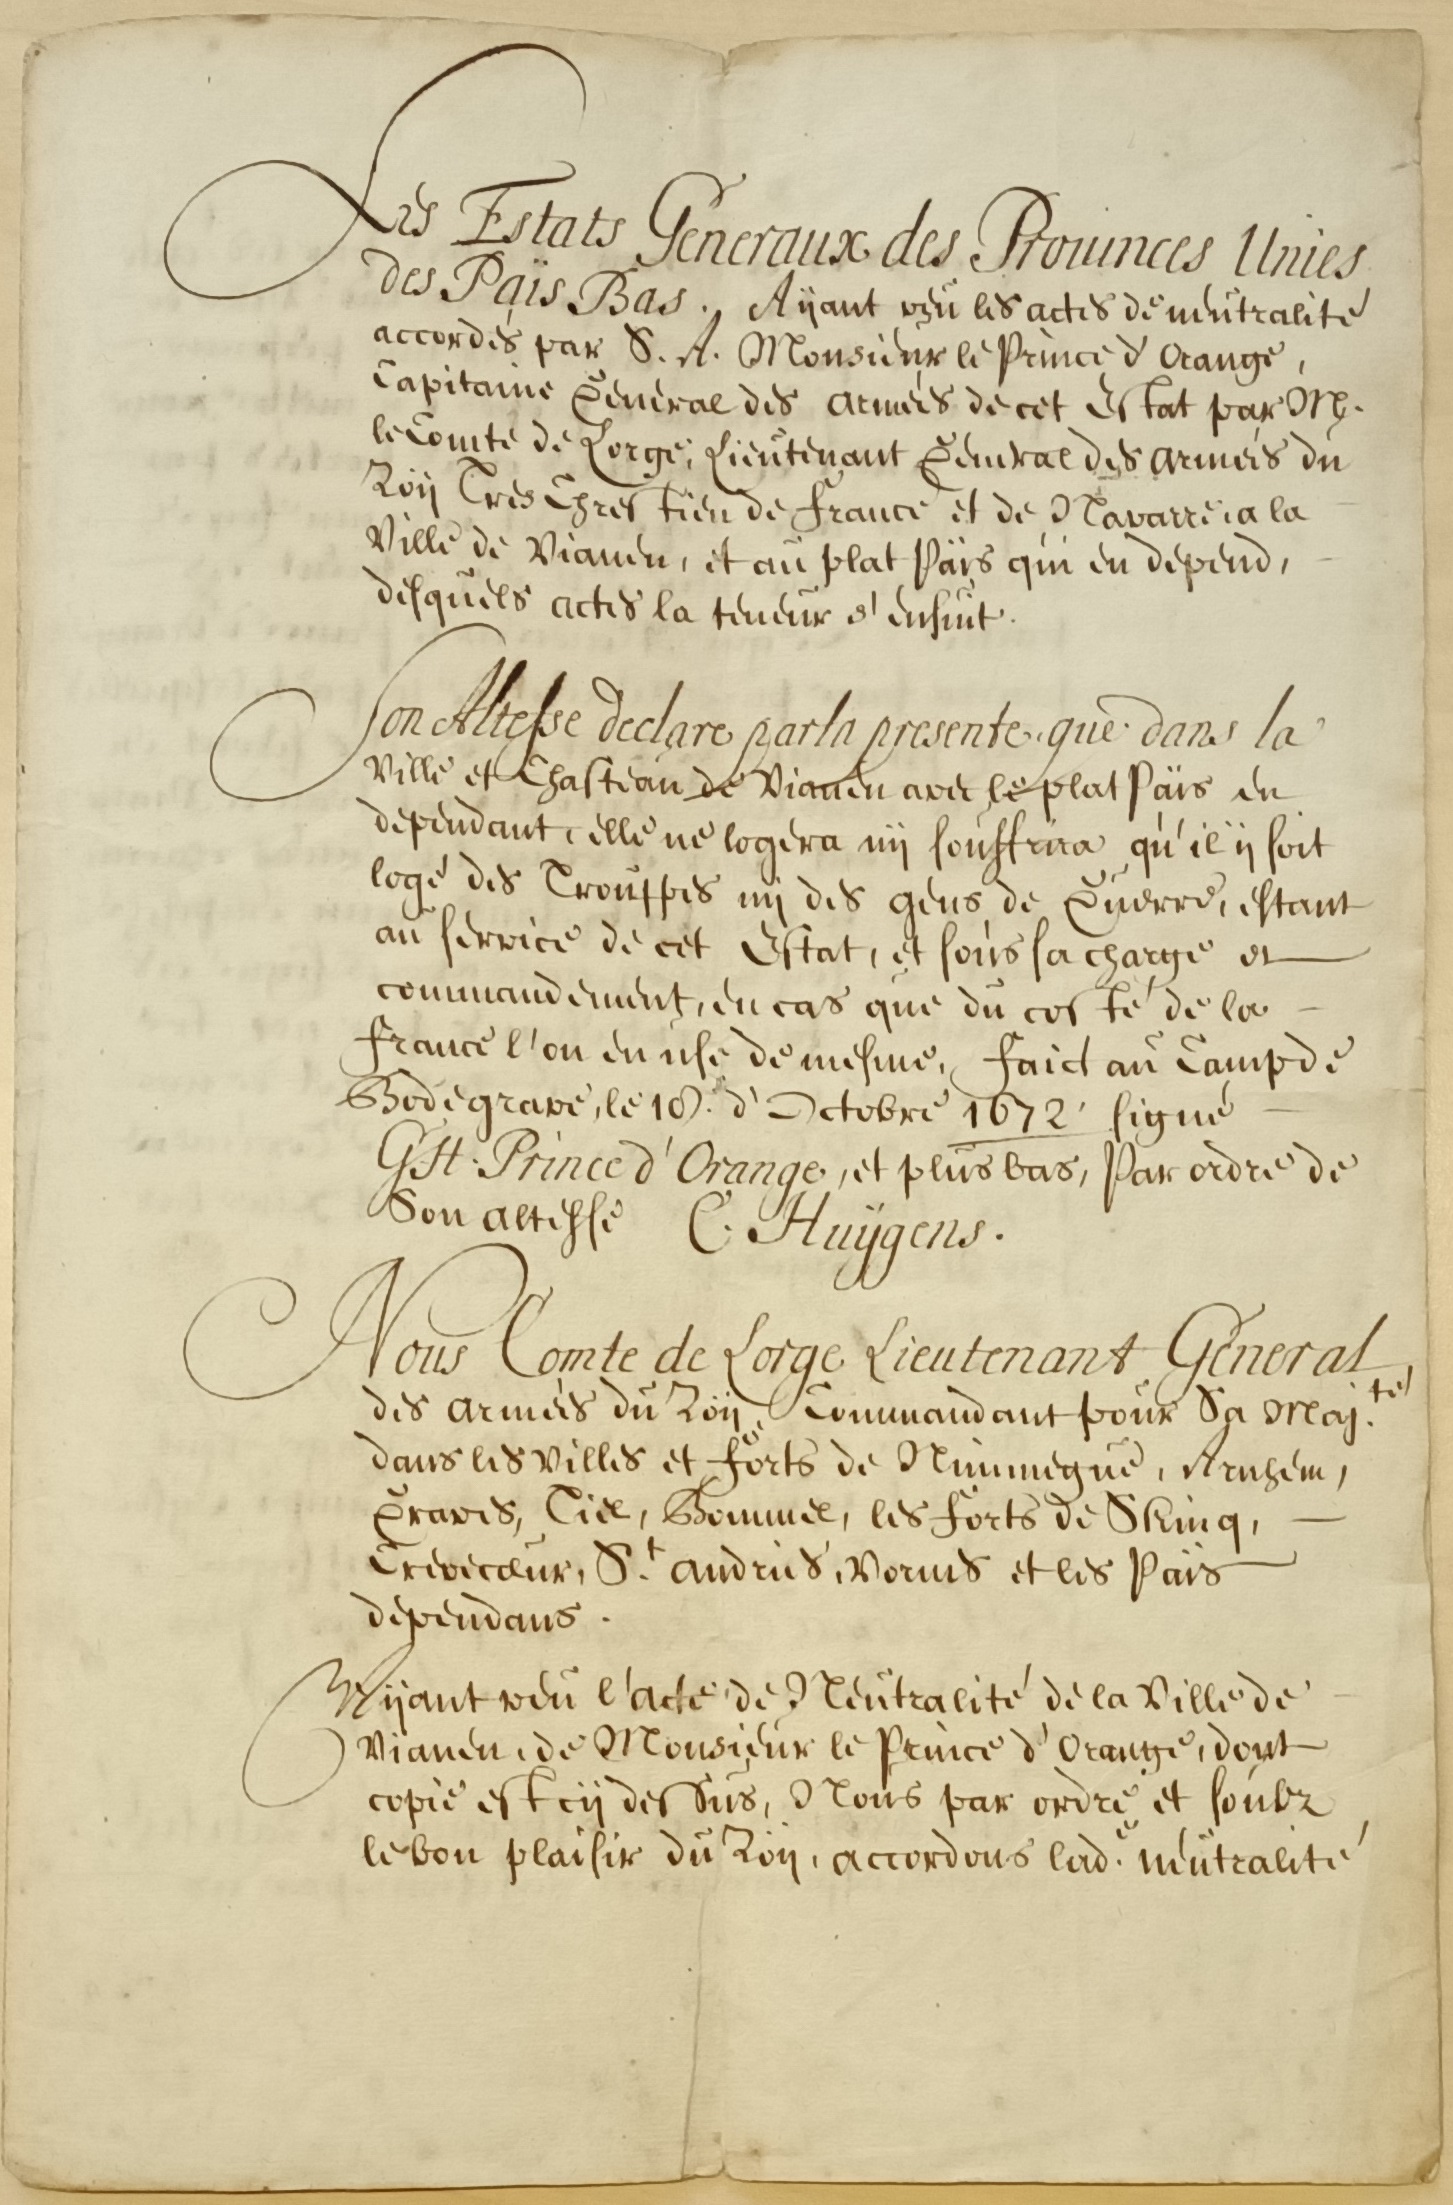 RAZU, Bestuur van Stad en Land van Vianen 1534-1810 (413), inv. nr. 448, authentiek uittreksel uit het register van resoluties der Staten Generaal van stukken betreffende de neutraliteit van Vianen 1672.